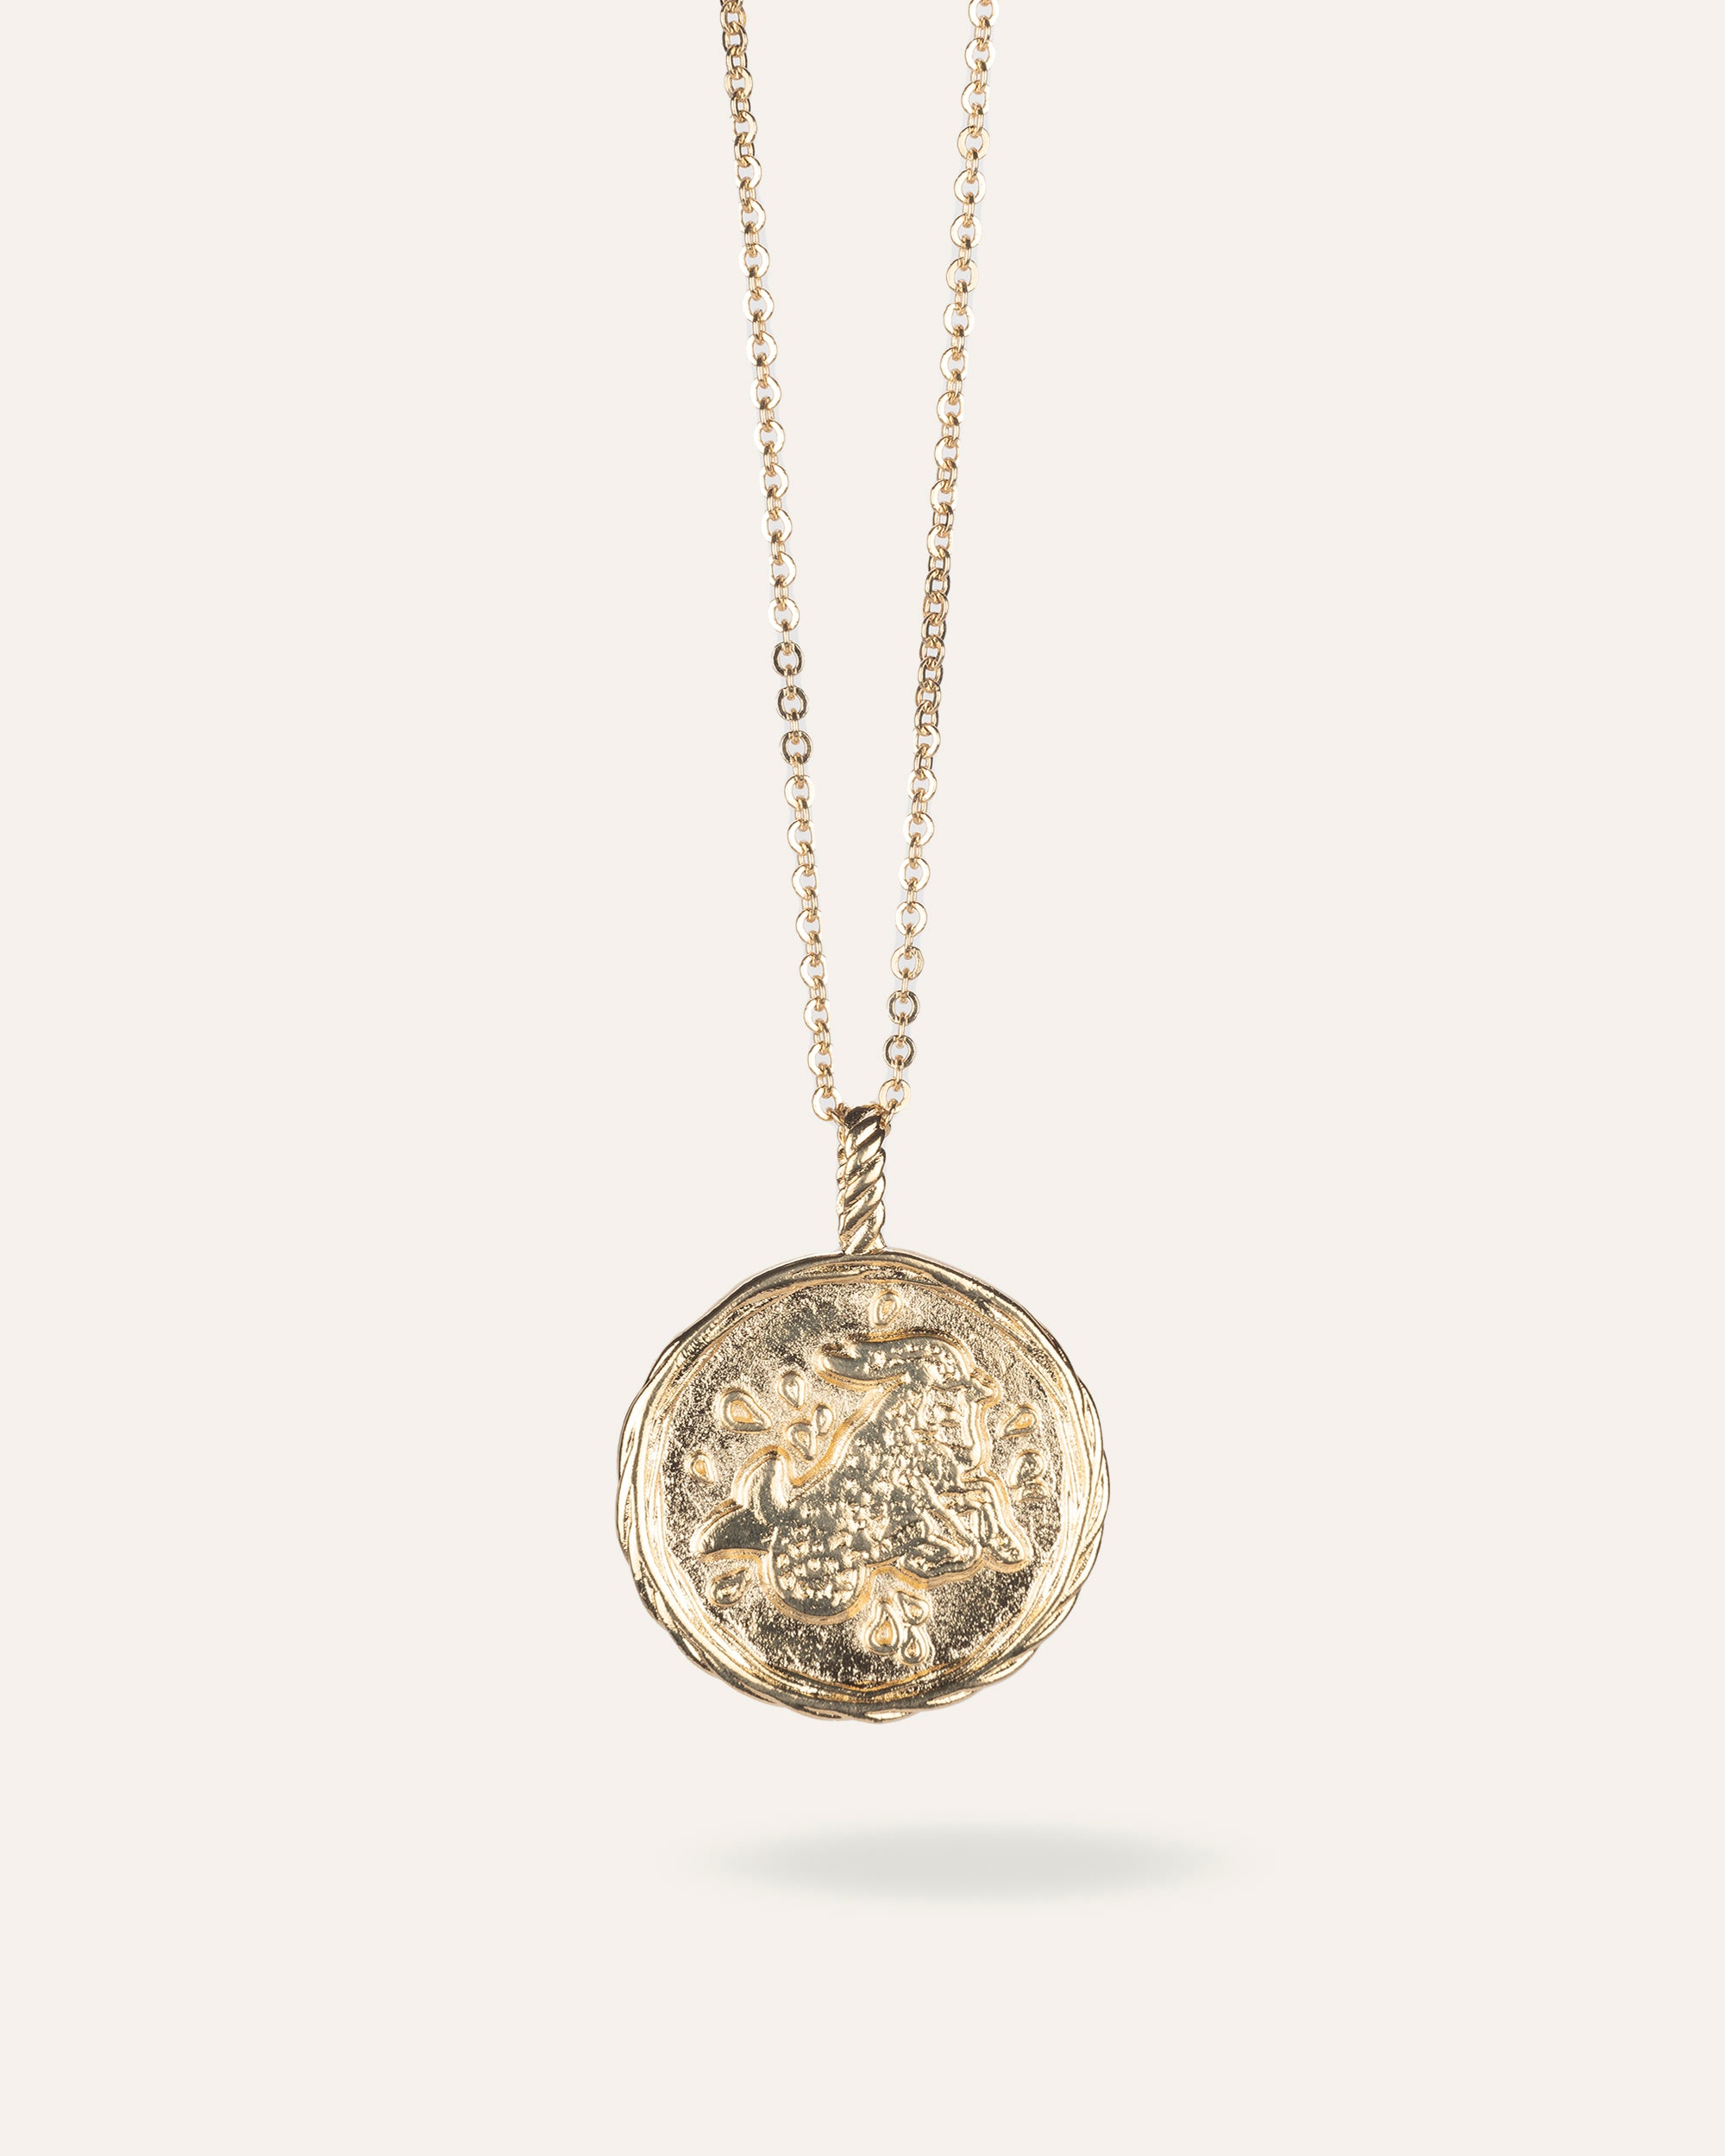 Collier en chaîne forçat avec une médaille au signe astrologique capricorne en plaqué or 3 microns.